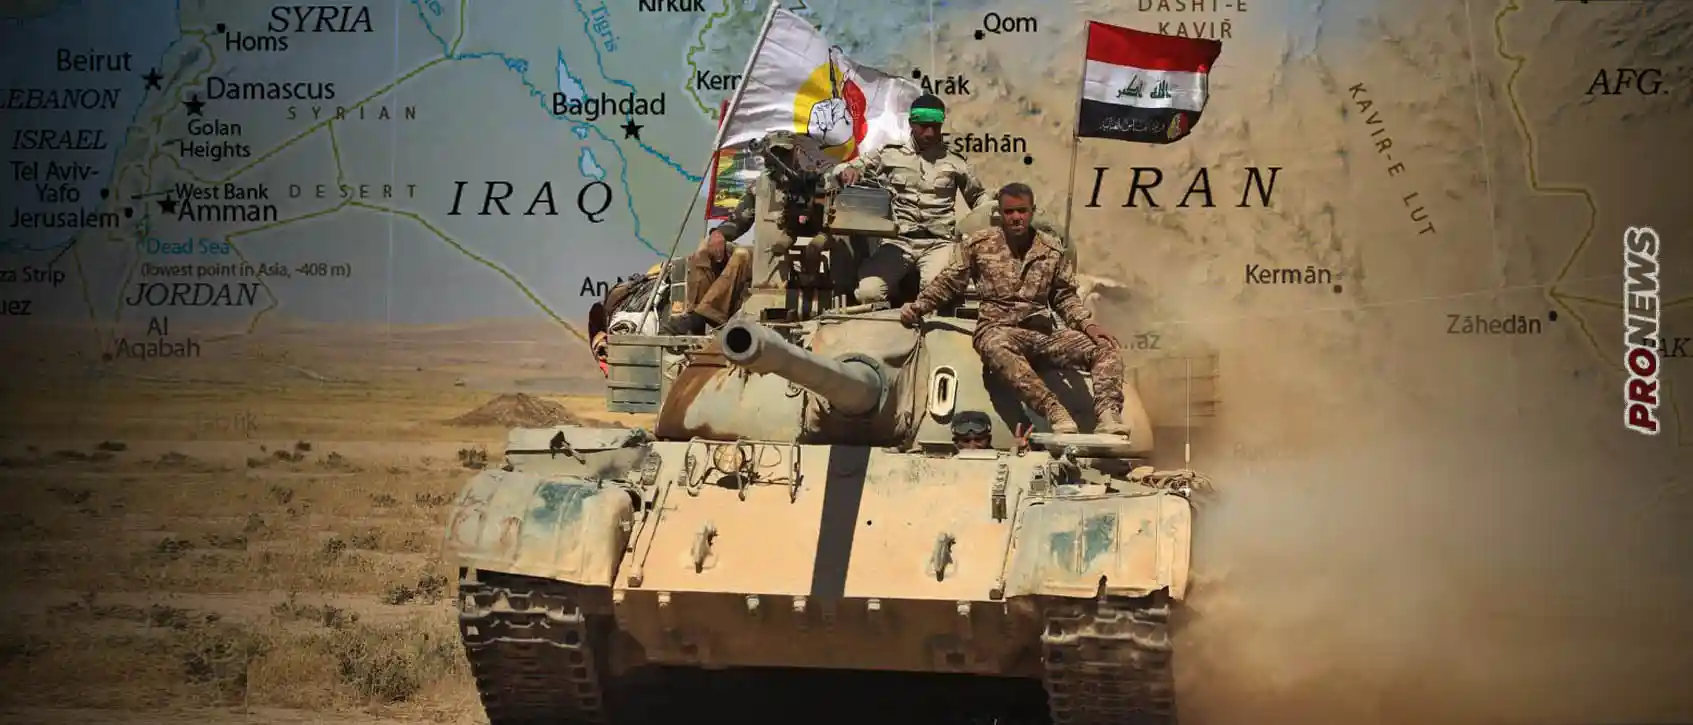 Ιράν και Ιράκ ετοιμάζονται για επιθέσεις στις αμερικανικές βάσεις αν οι ΗΠΑ κτυπήσουν την Χαμάς: Κλιμάκωση χωρίς τέλος